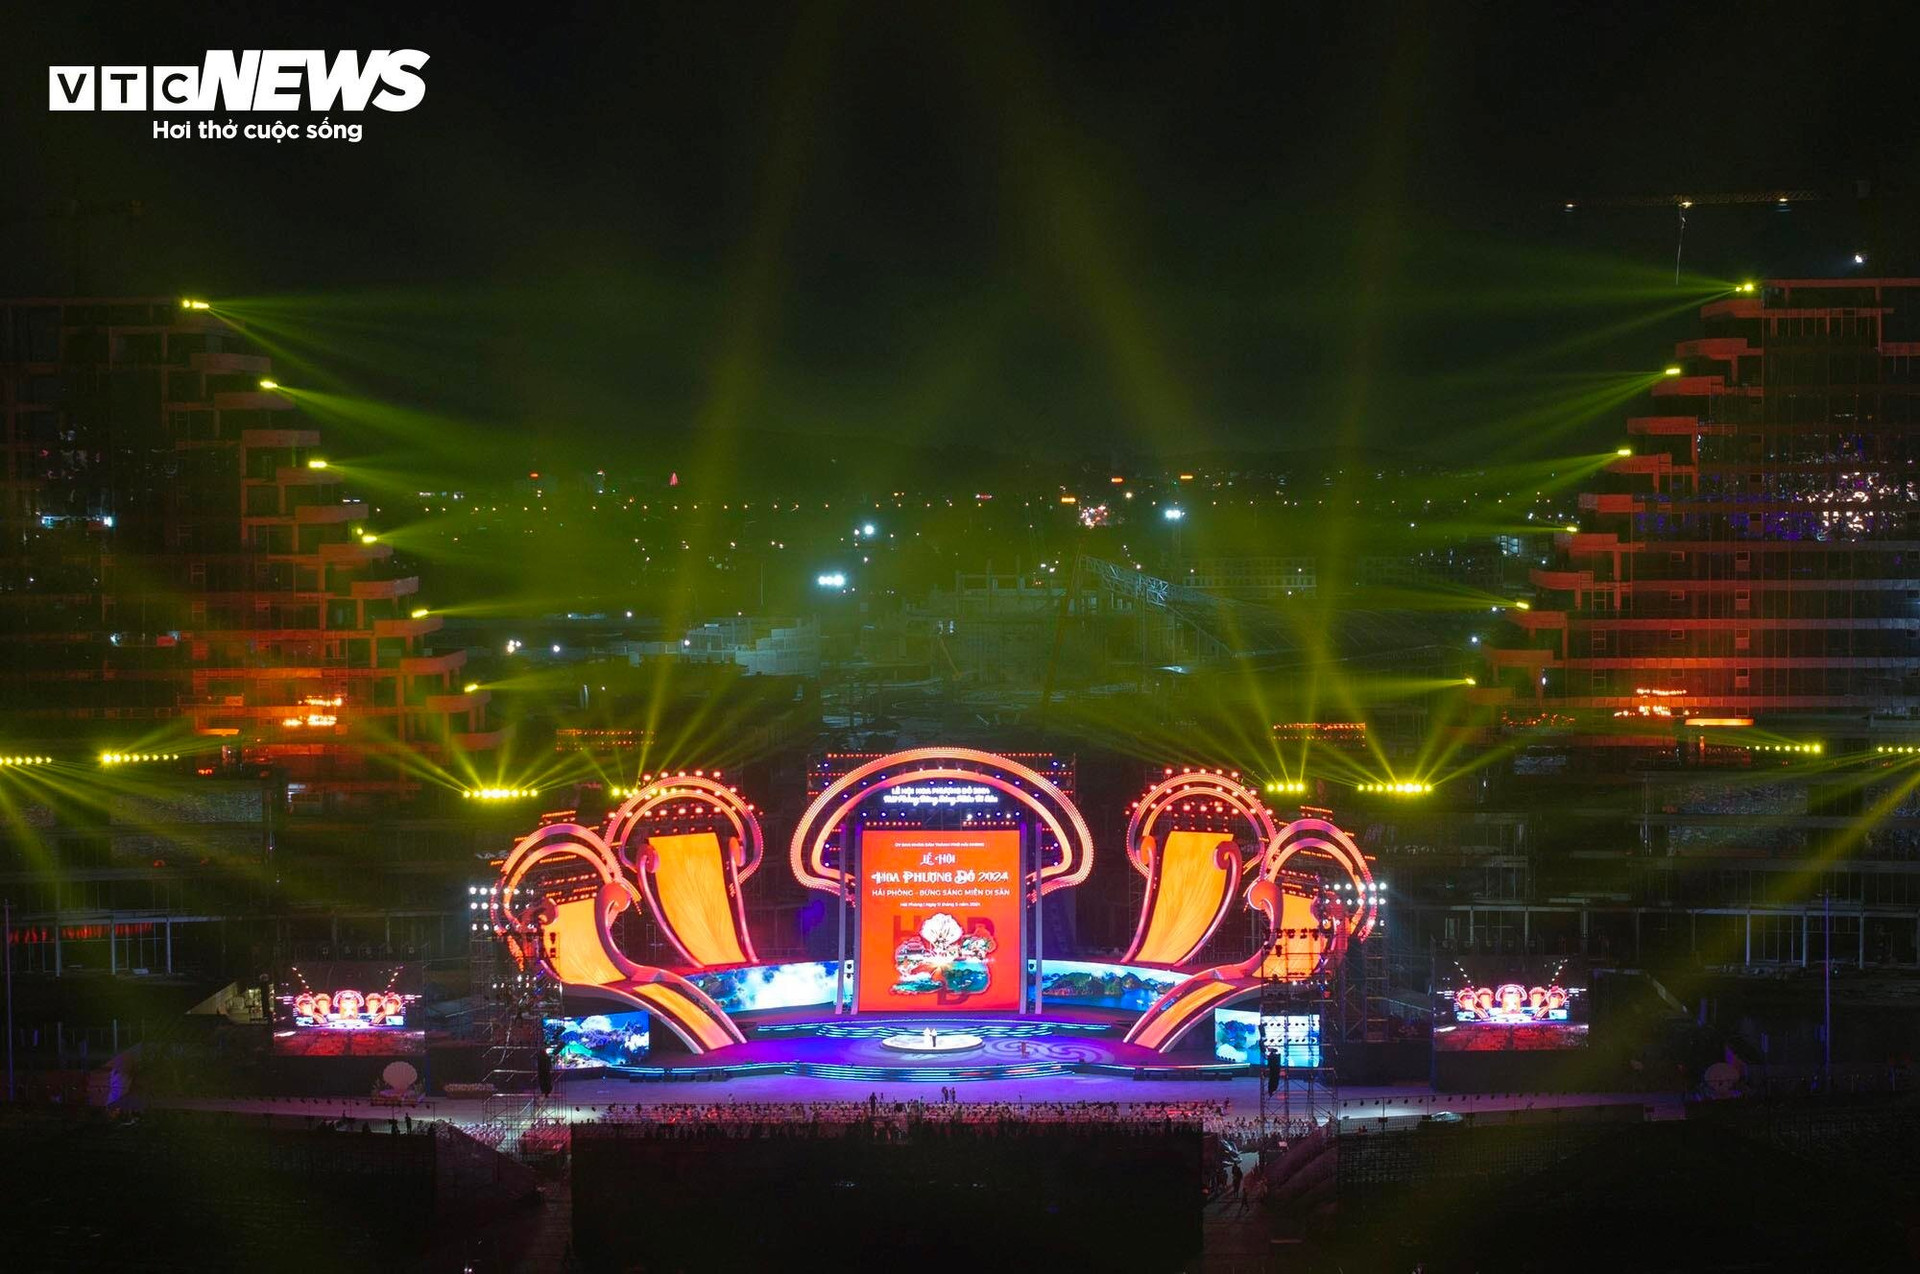 Đây là chương trình đêm hội có quy mô lớn nhất từ trước đến nay trên địa bàn thành phố Hải Phòng cả về sân khấu, khán giả, khán đài có sức chứa lên đến đến 18.000 người. (Ảnh: Đức Nghĩa)